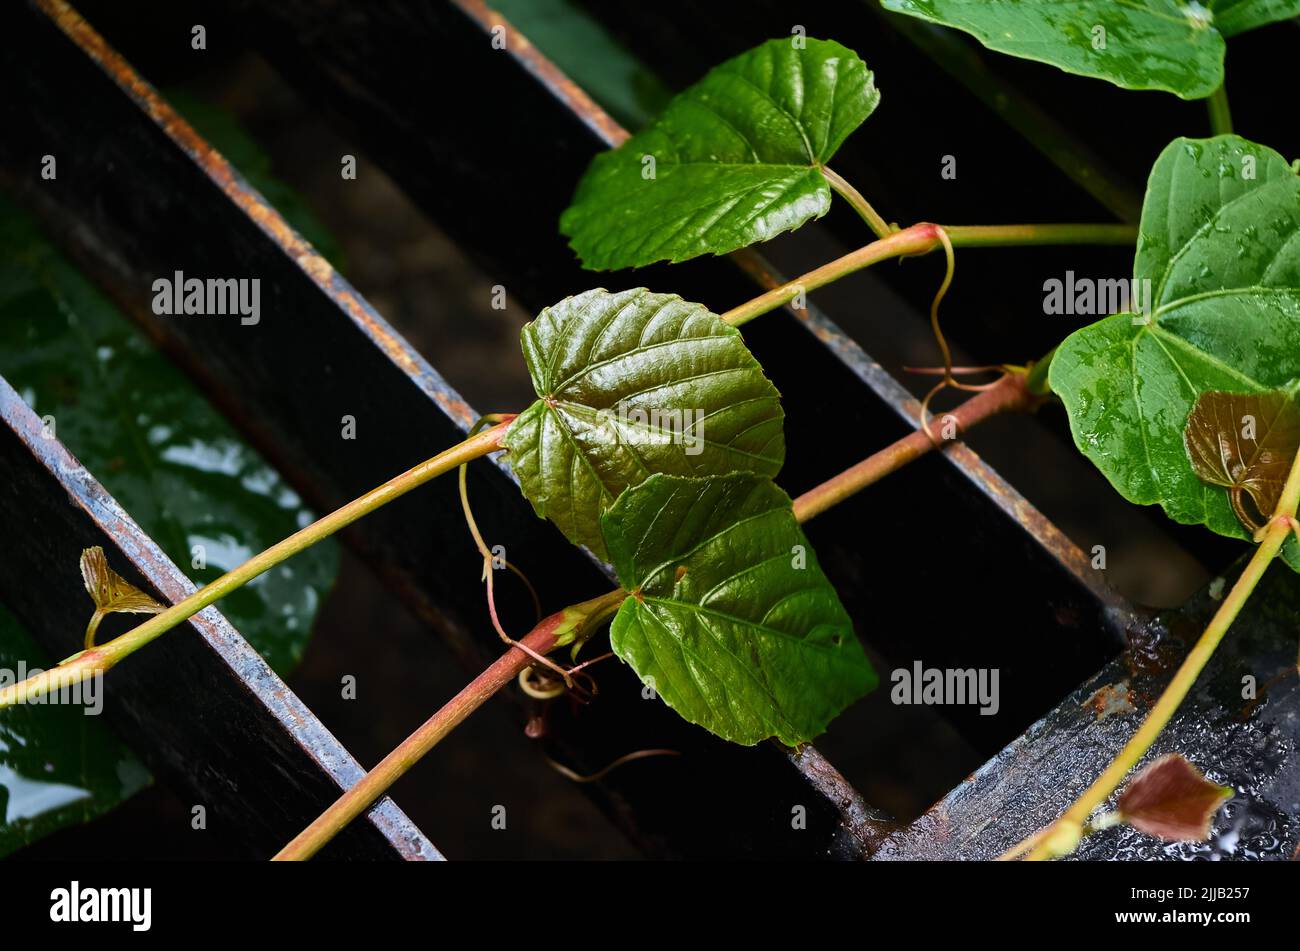 Las hojas y la vid en la rejilla metálica de la canaleta de drenaje Foto de stock